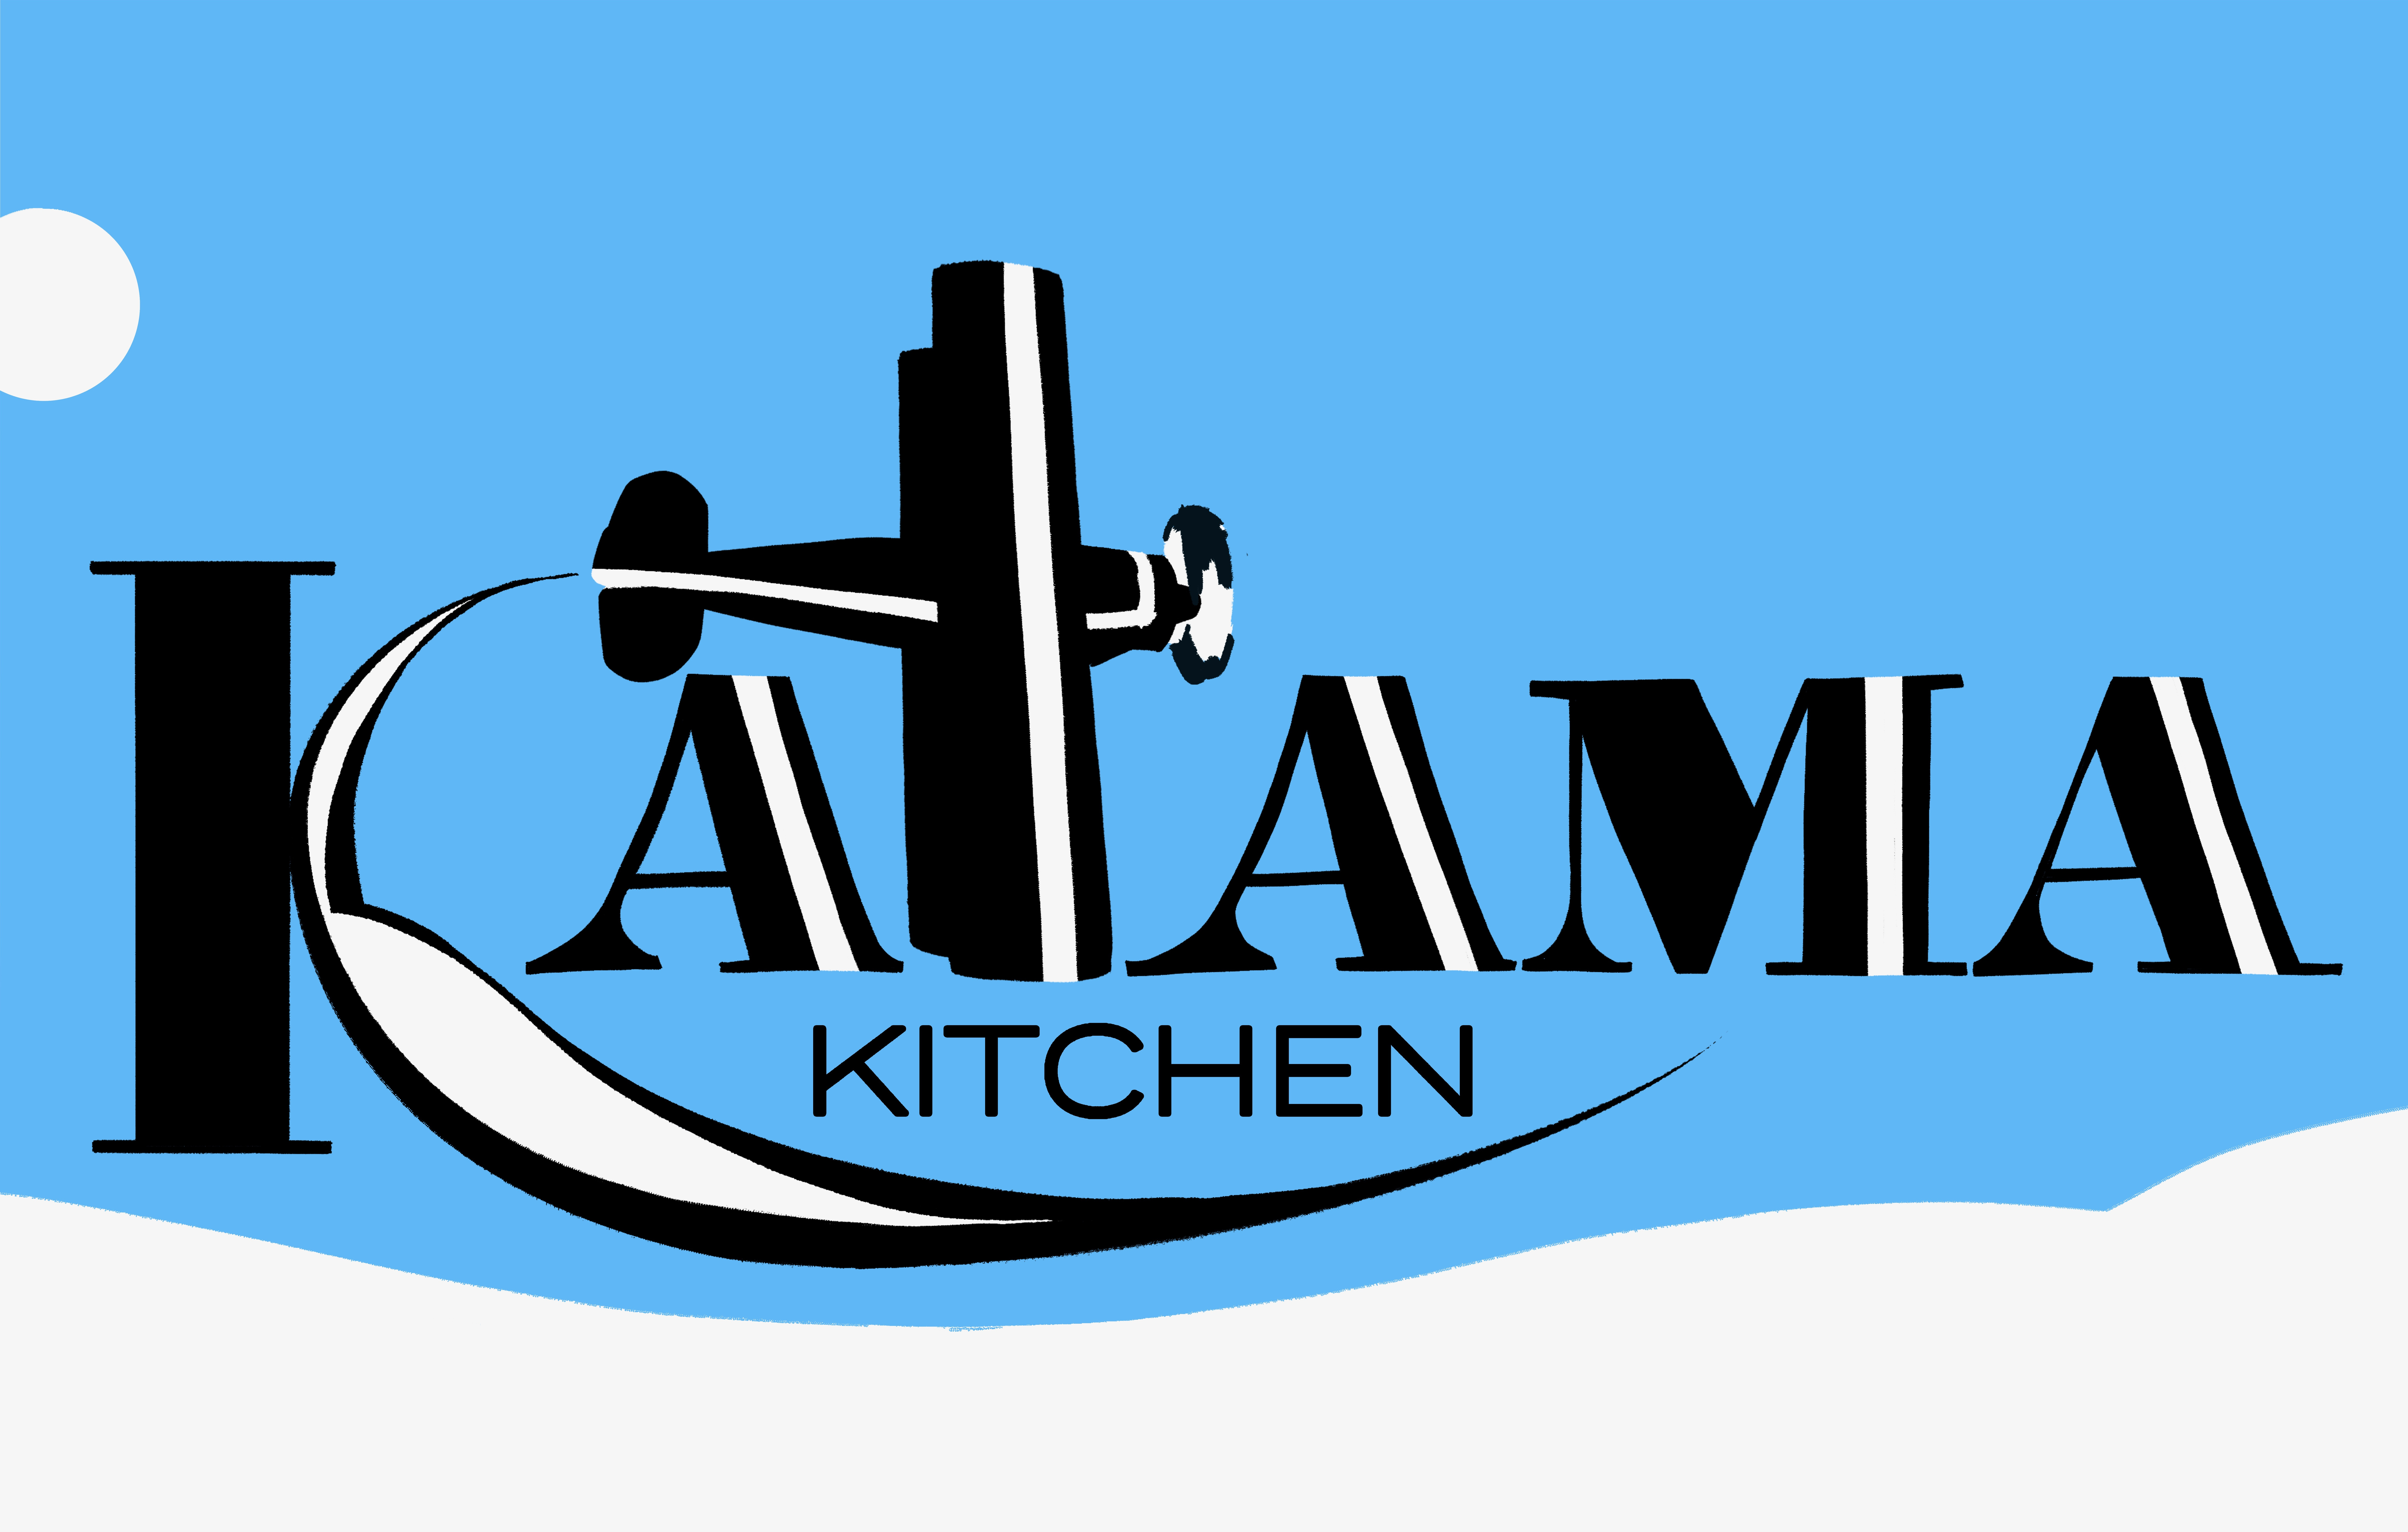 Katama Kitchen 12 Mattakesett Way